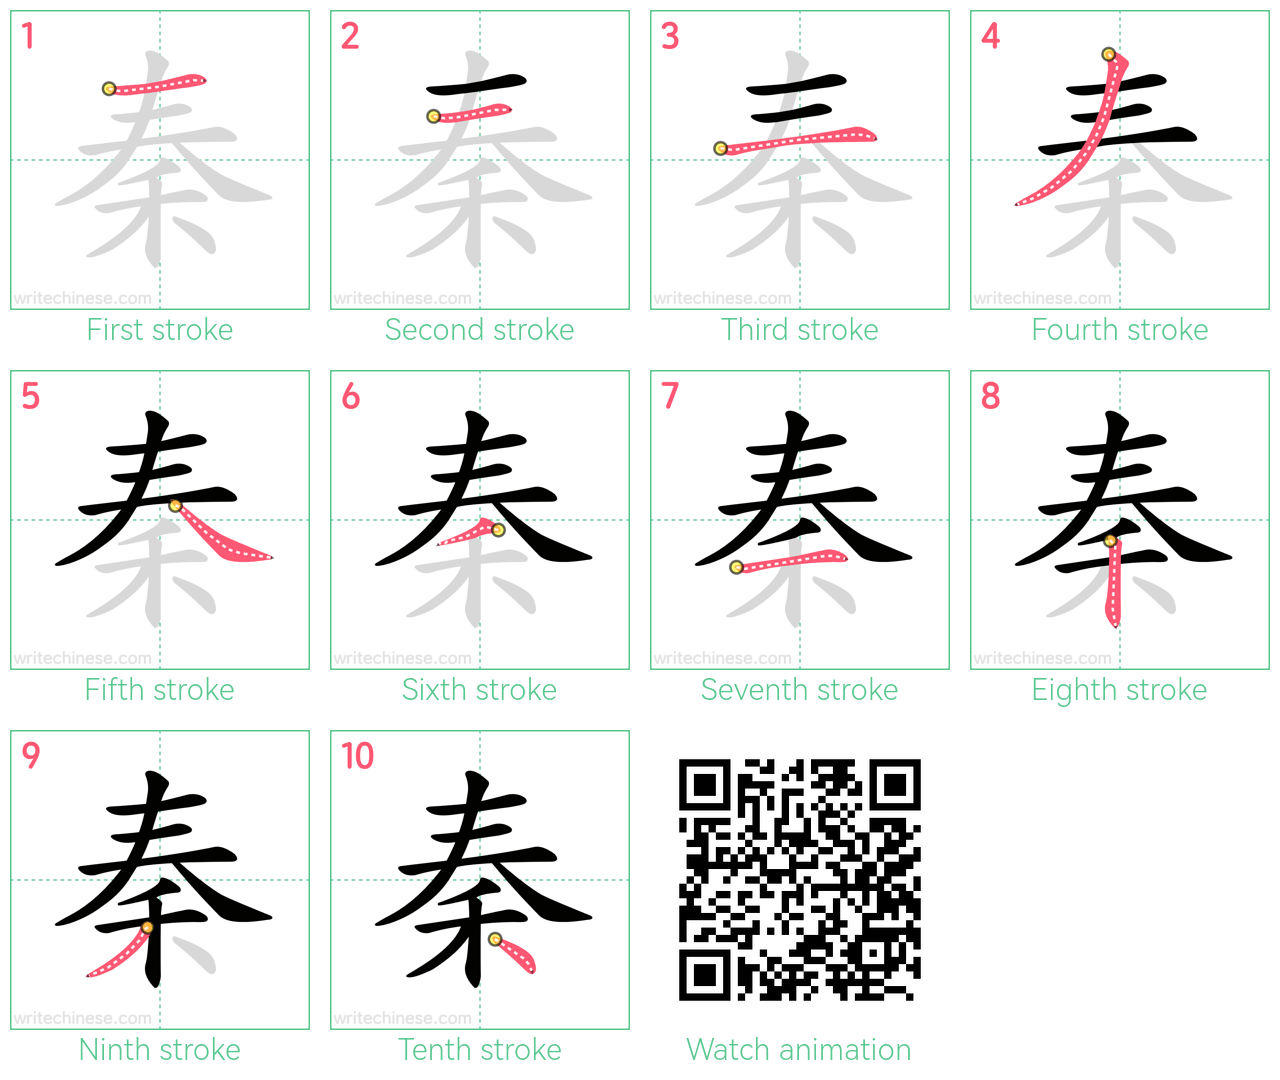 秦 step-by-step stroke order diagrams